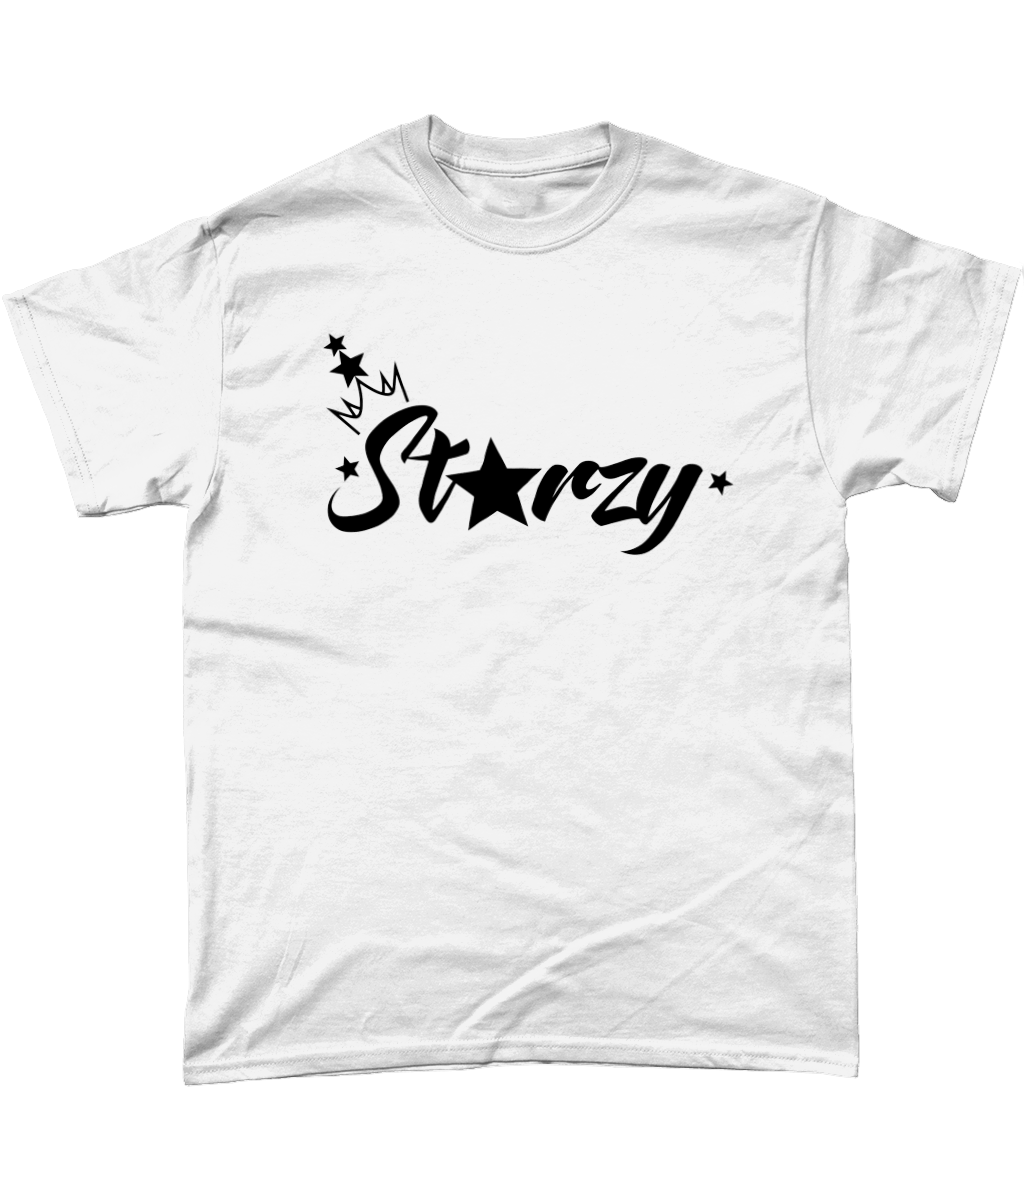 Anastarzia Anaquway - Starzy Black Logo T-Shirt - SNATCHED MERCH